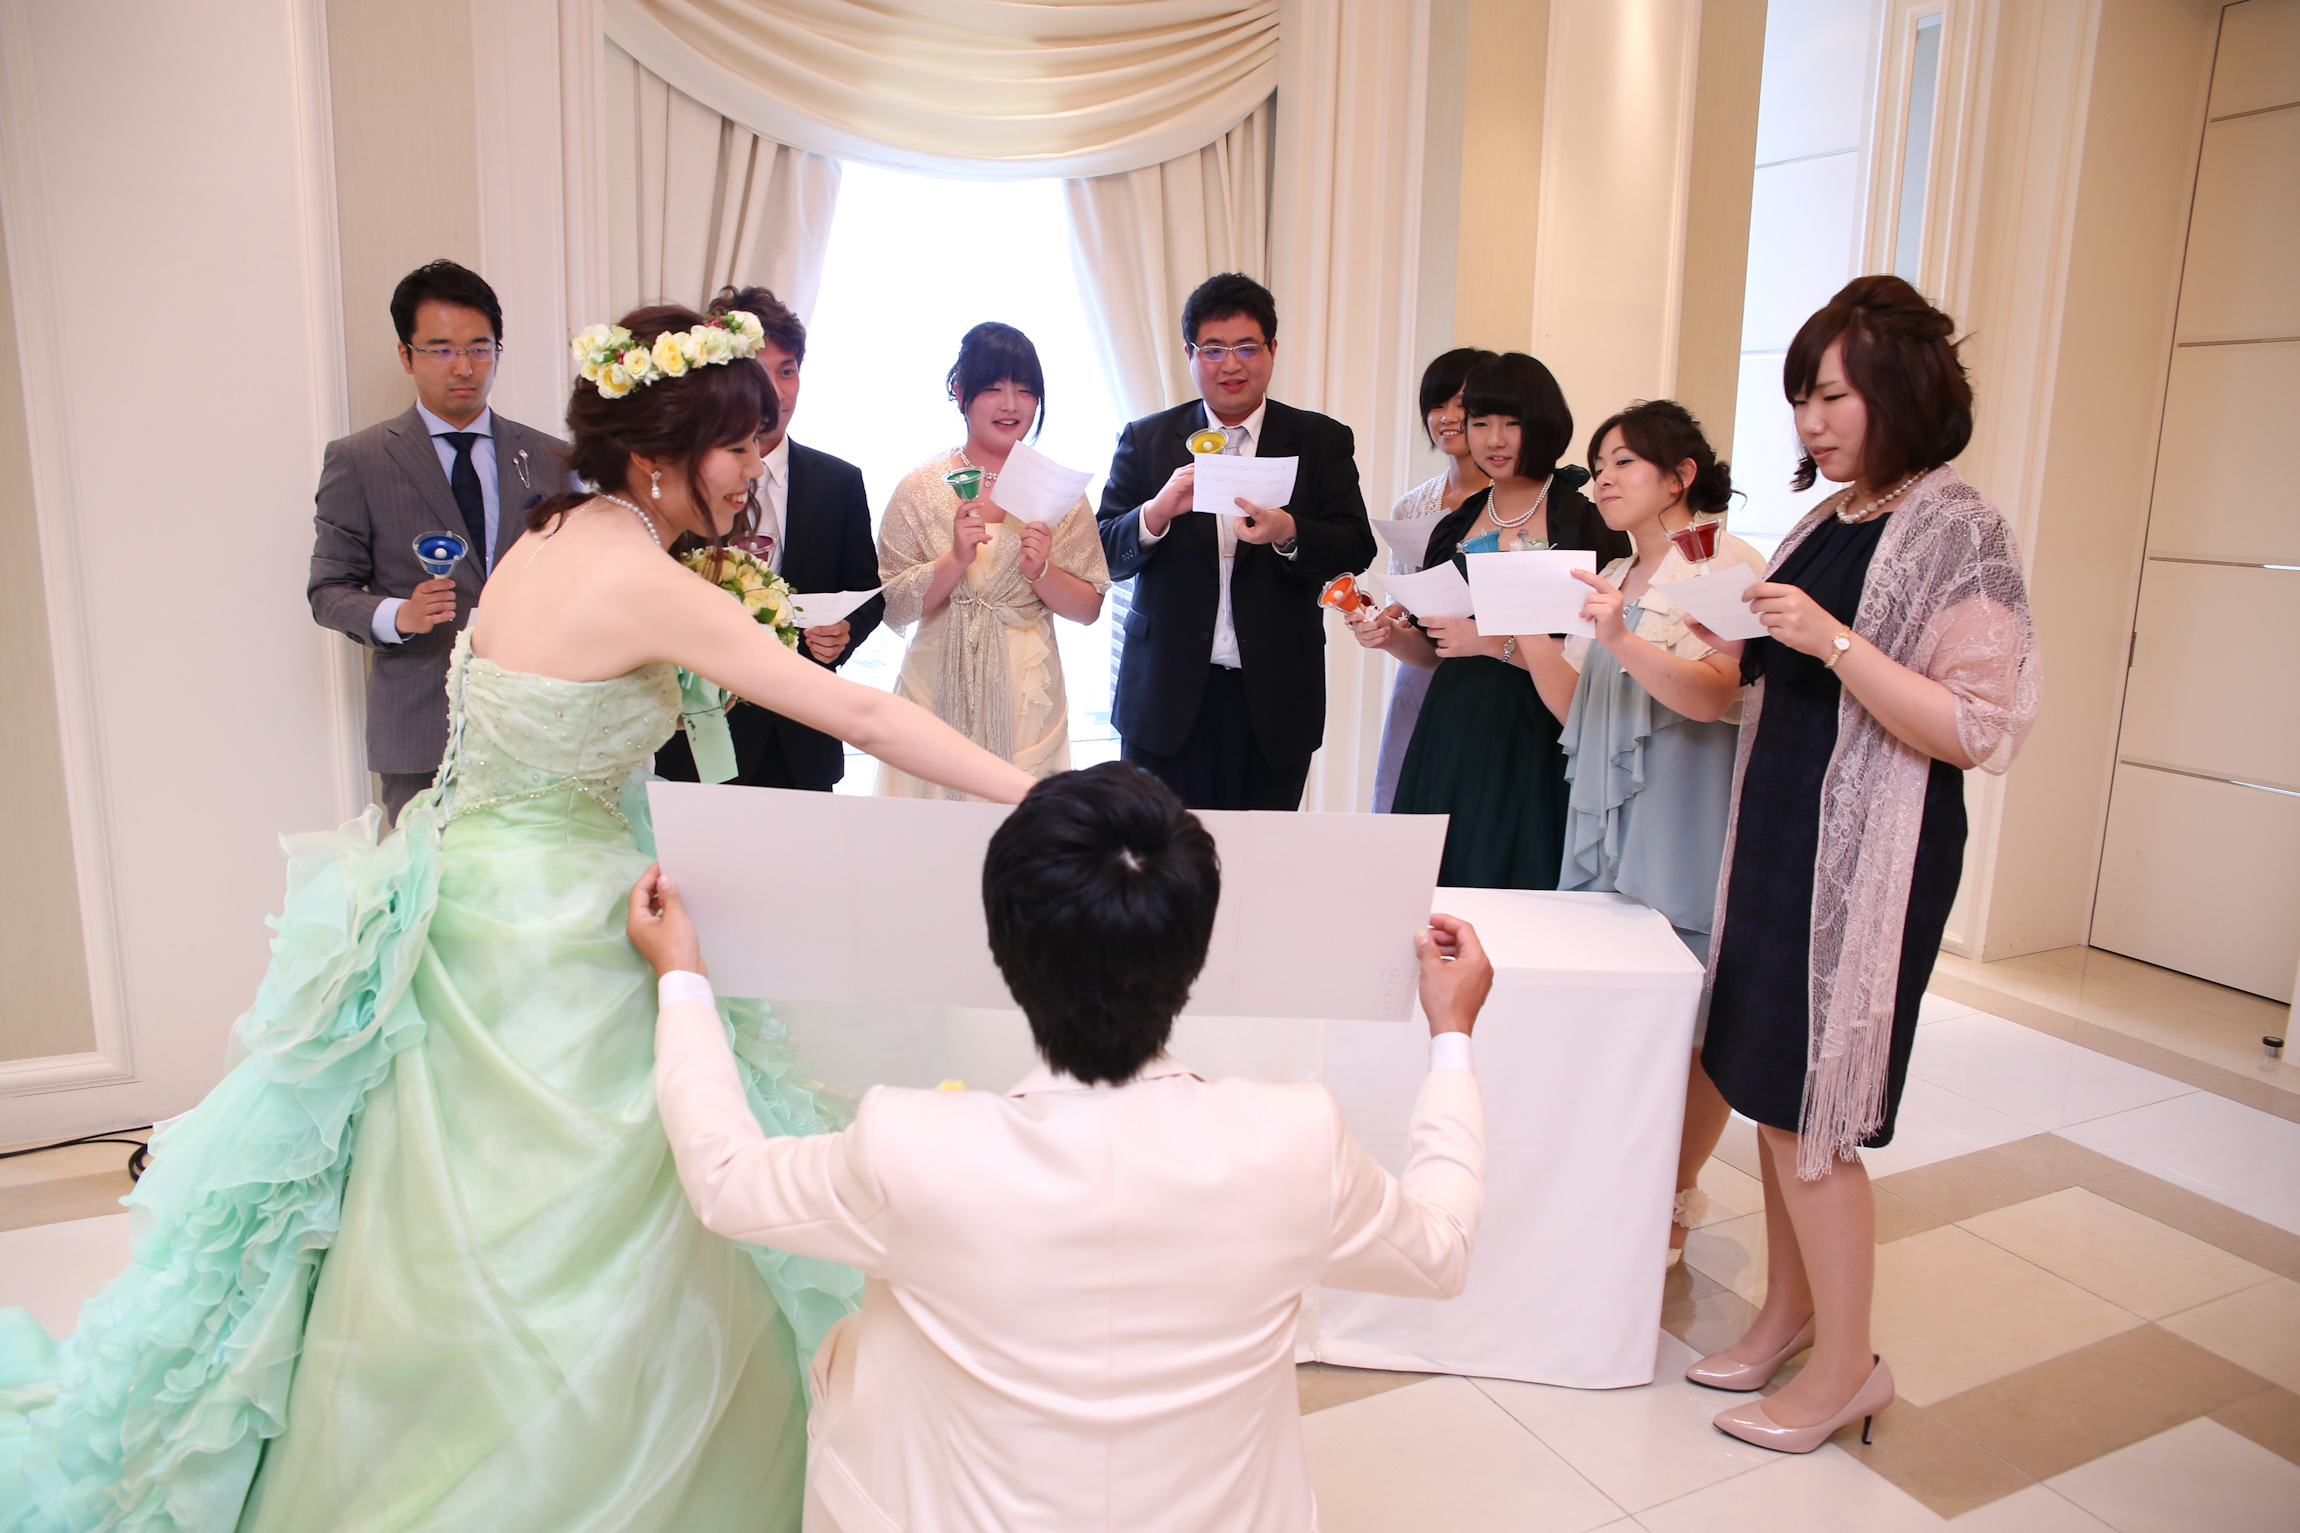 HAPPY WEDDING＊〜 | 【結婚式場】東京駅近ならアンジェリオン オ 